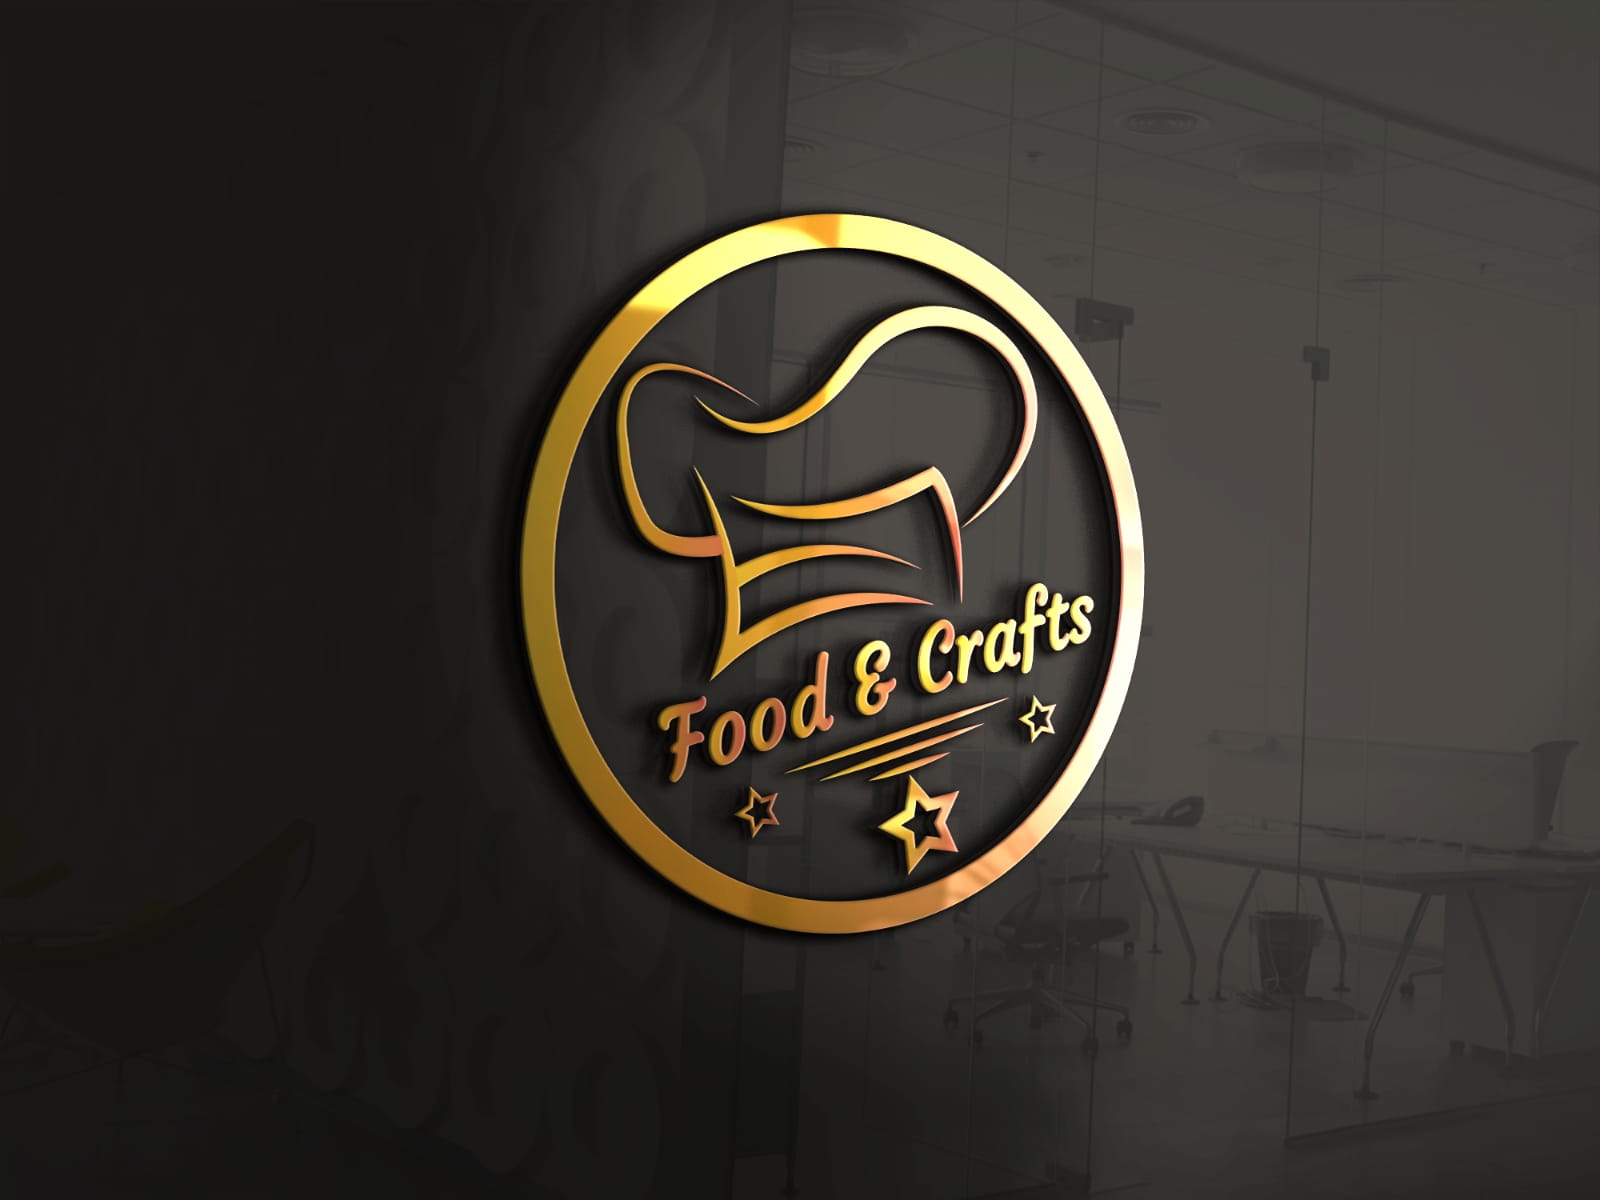 Food & Crafts